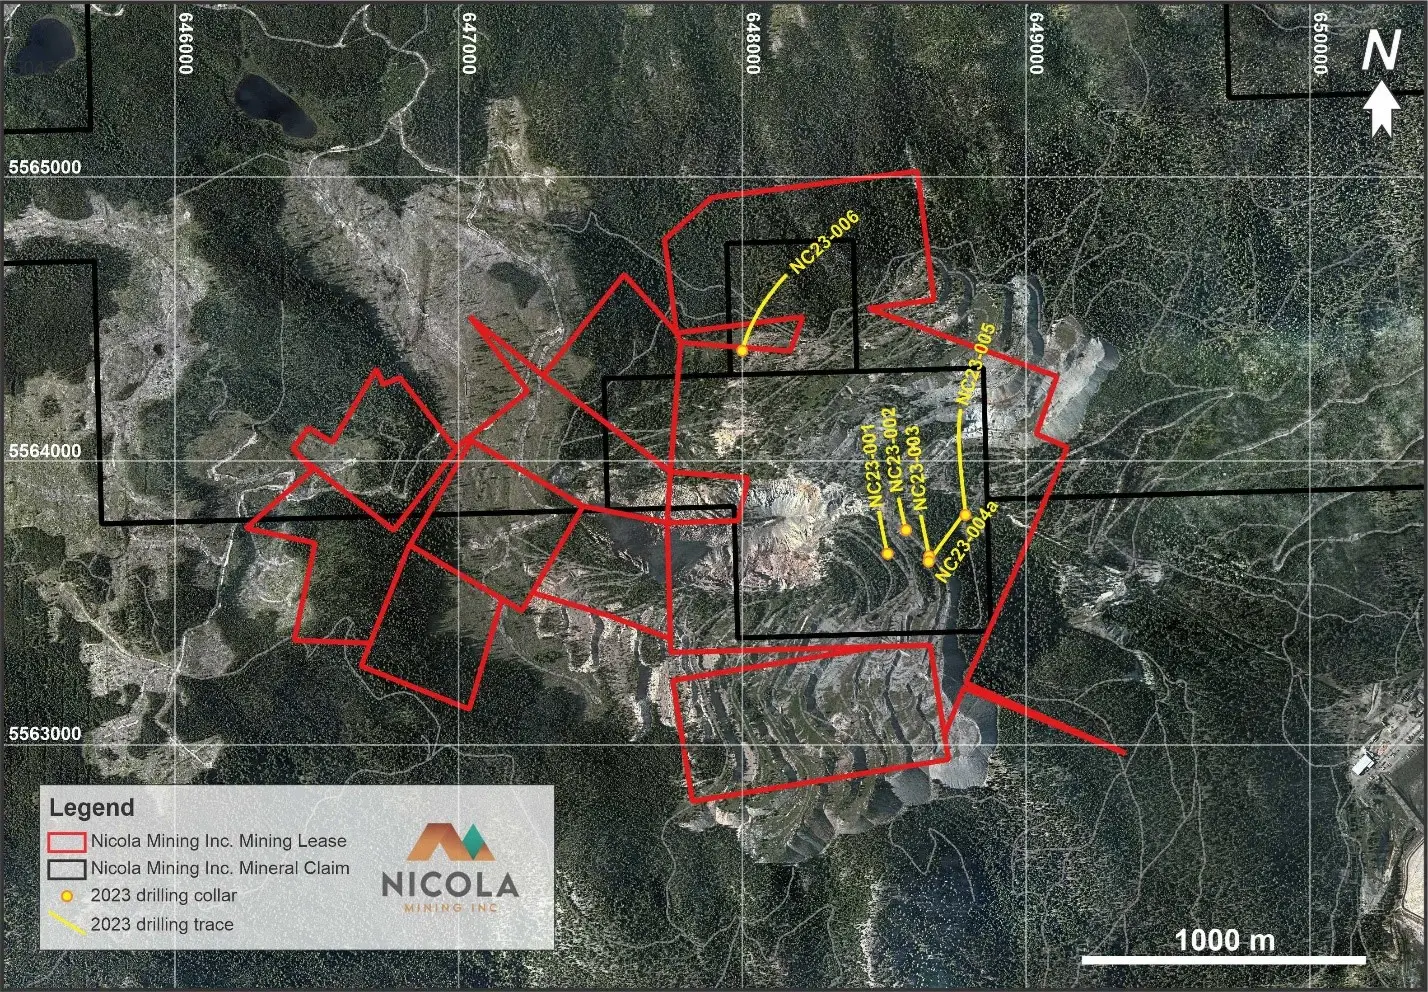 Satellitenbild der Projektgebiete von Nicola Mining mit markierten Pachtflächen und Standorten des Bohrprogramms 2023, eingetragen in NAD 83 UTM 10N.